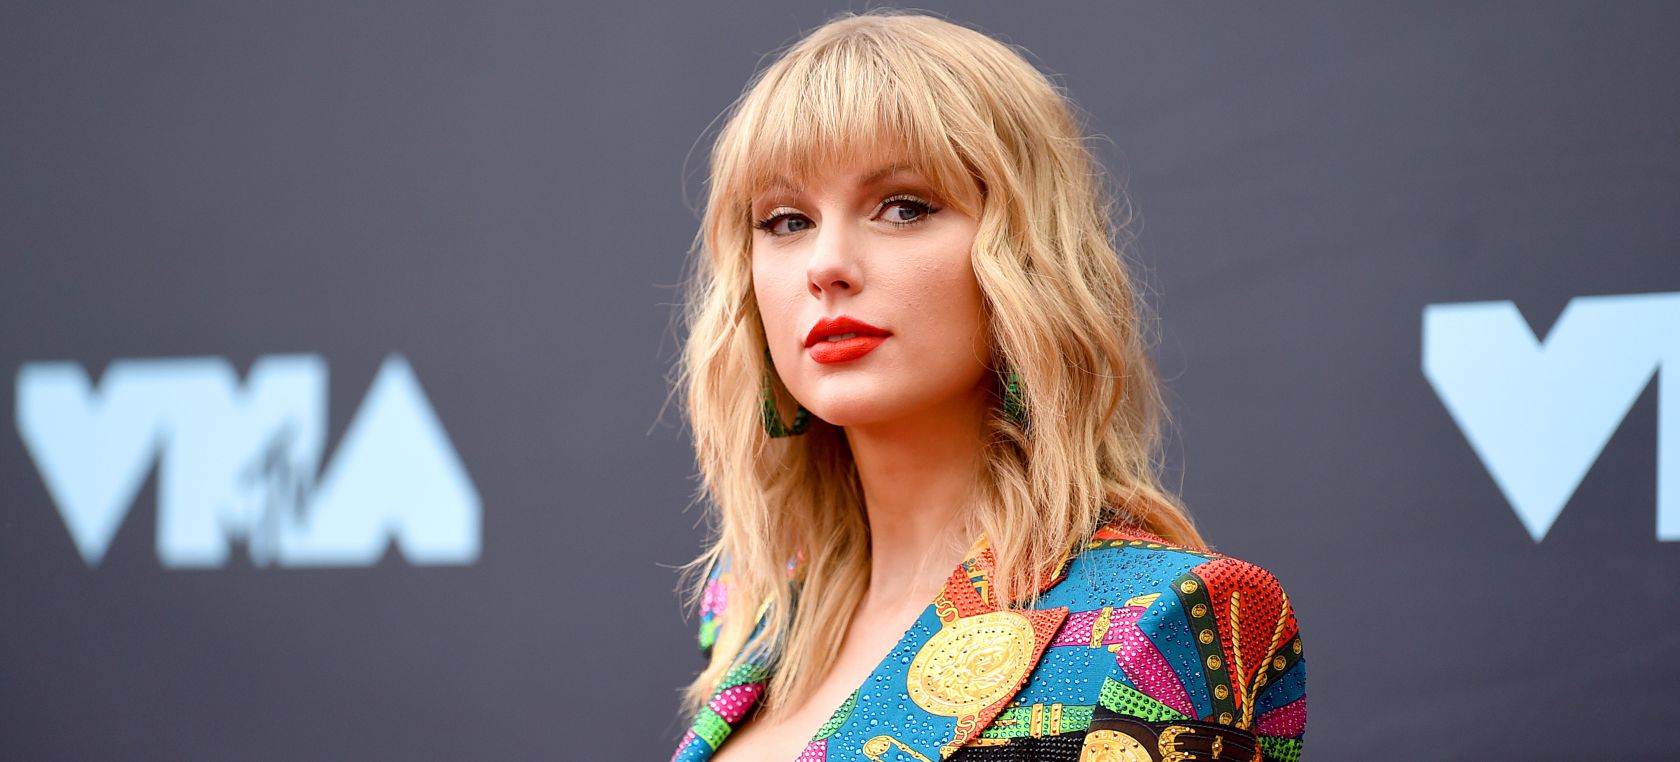 Taylor Swift té una col·lecció de 7 cançons escrites als seus exnòvios